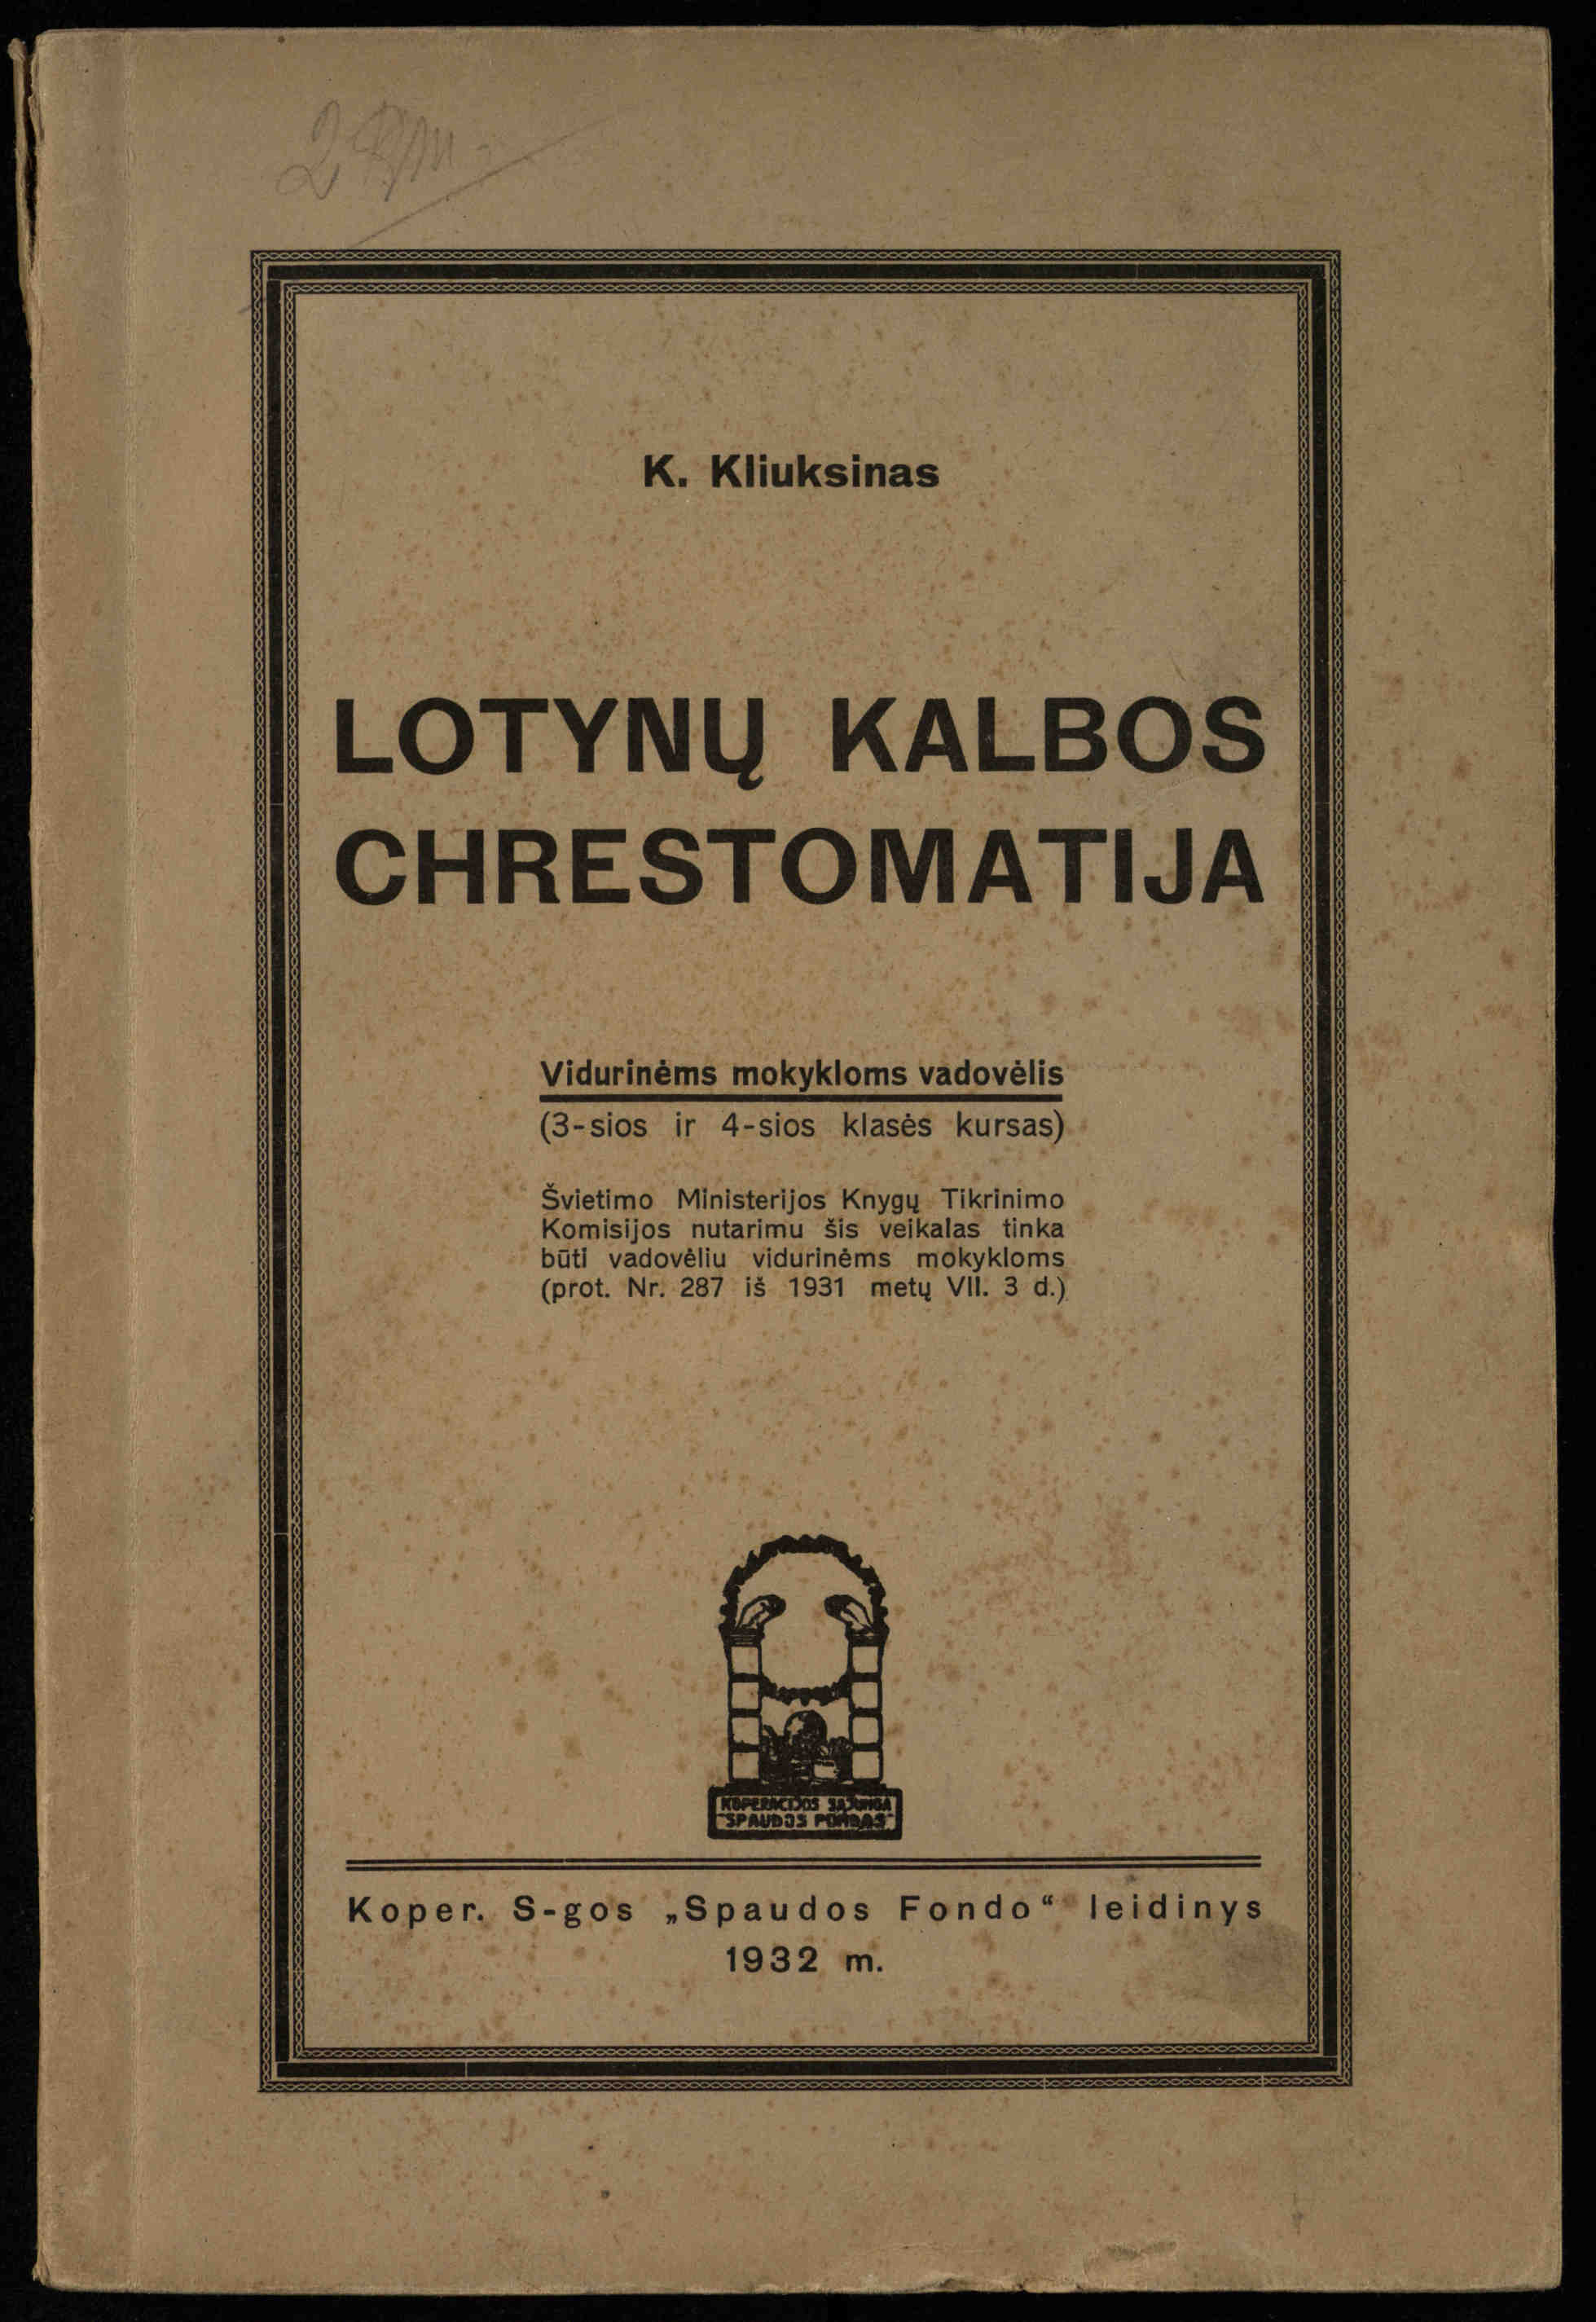 Lotynų kalbos chrestomatija: vidurinėms mokykloms vadovėlis (3-sios ir 4-sios klasės kursas) / K. Kliuksinas. – [Kaunas]: Koper. s-ga „Spaudos fondas“, 1932. – 191 p. 